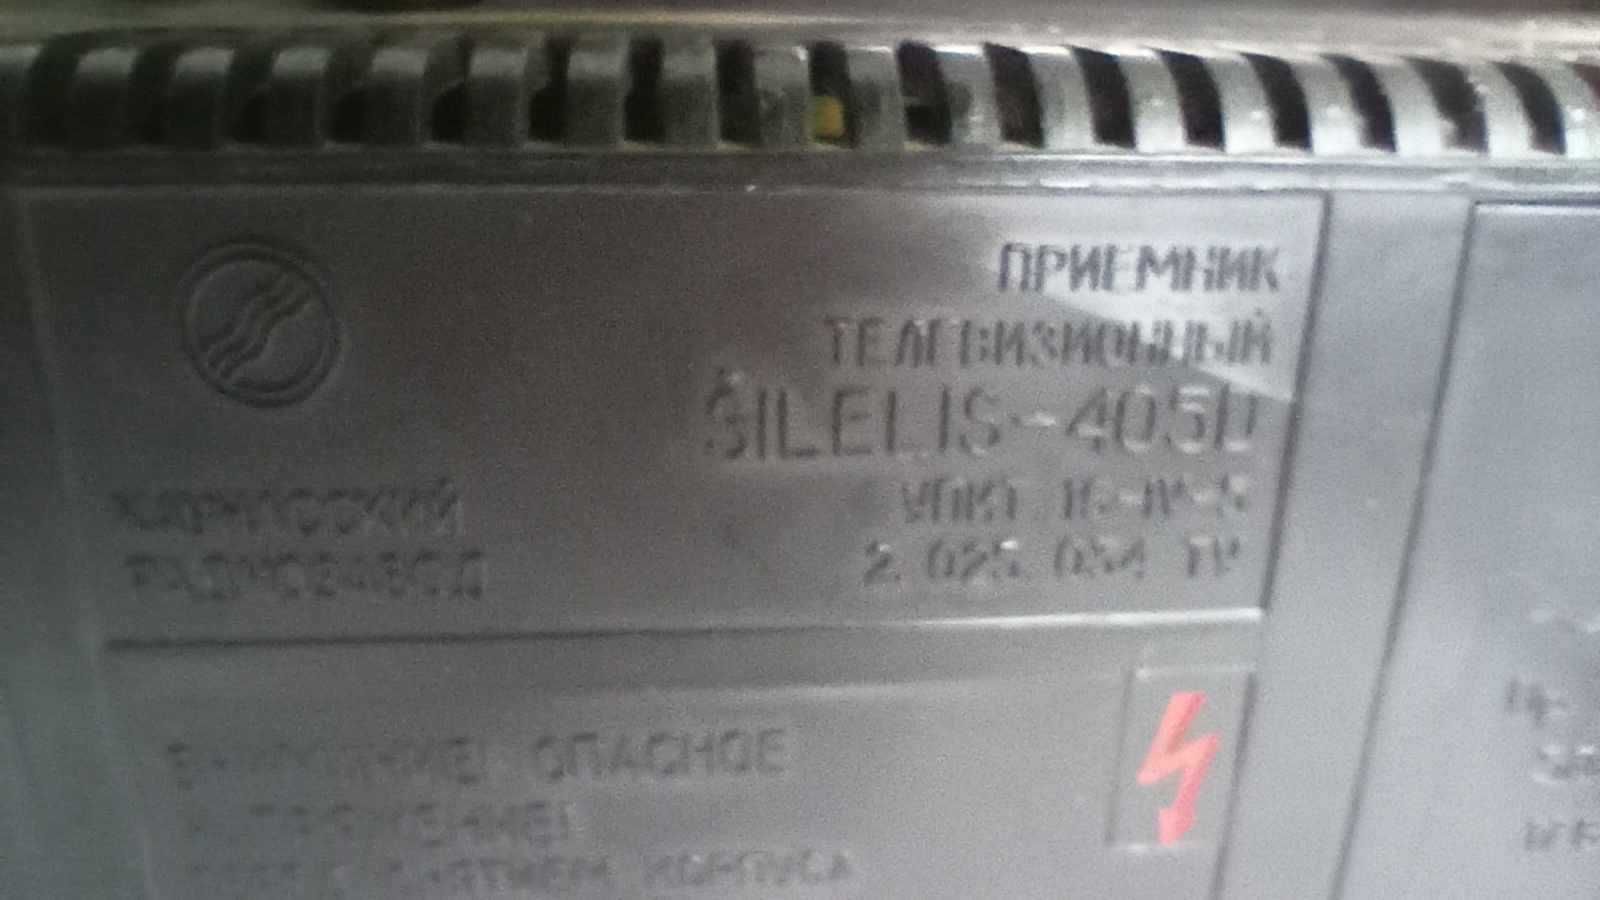 Stary telewizor turystyczny SILELIS 405 D do zapalniczki samochodowej